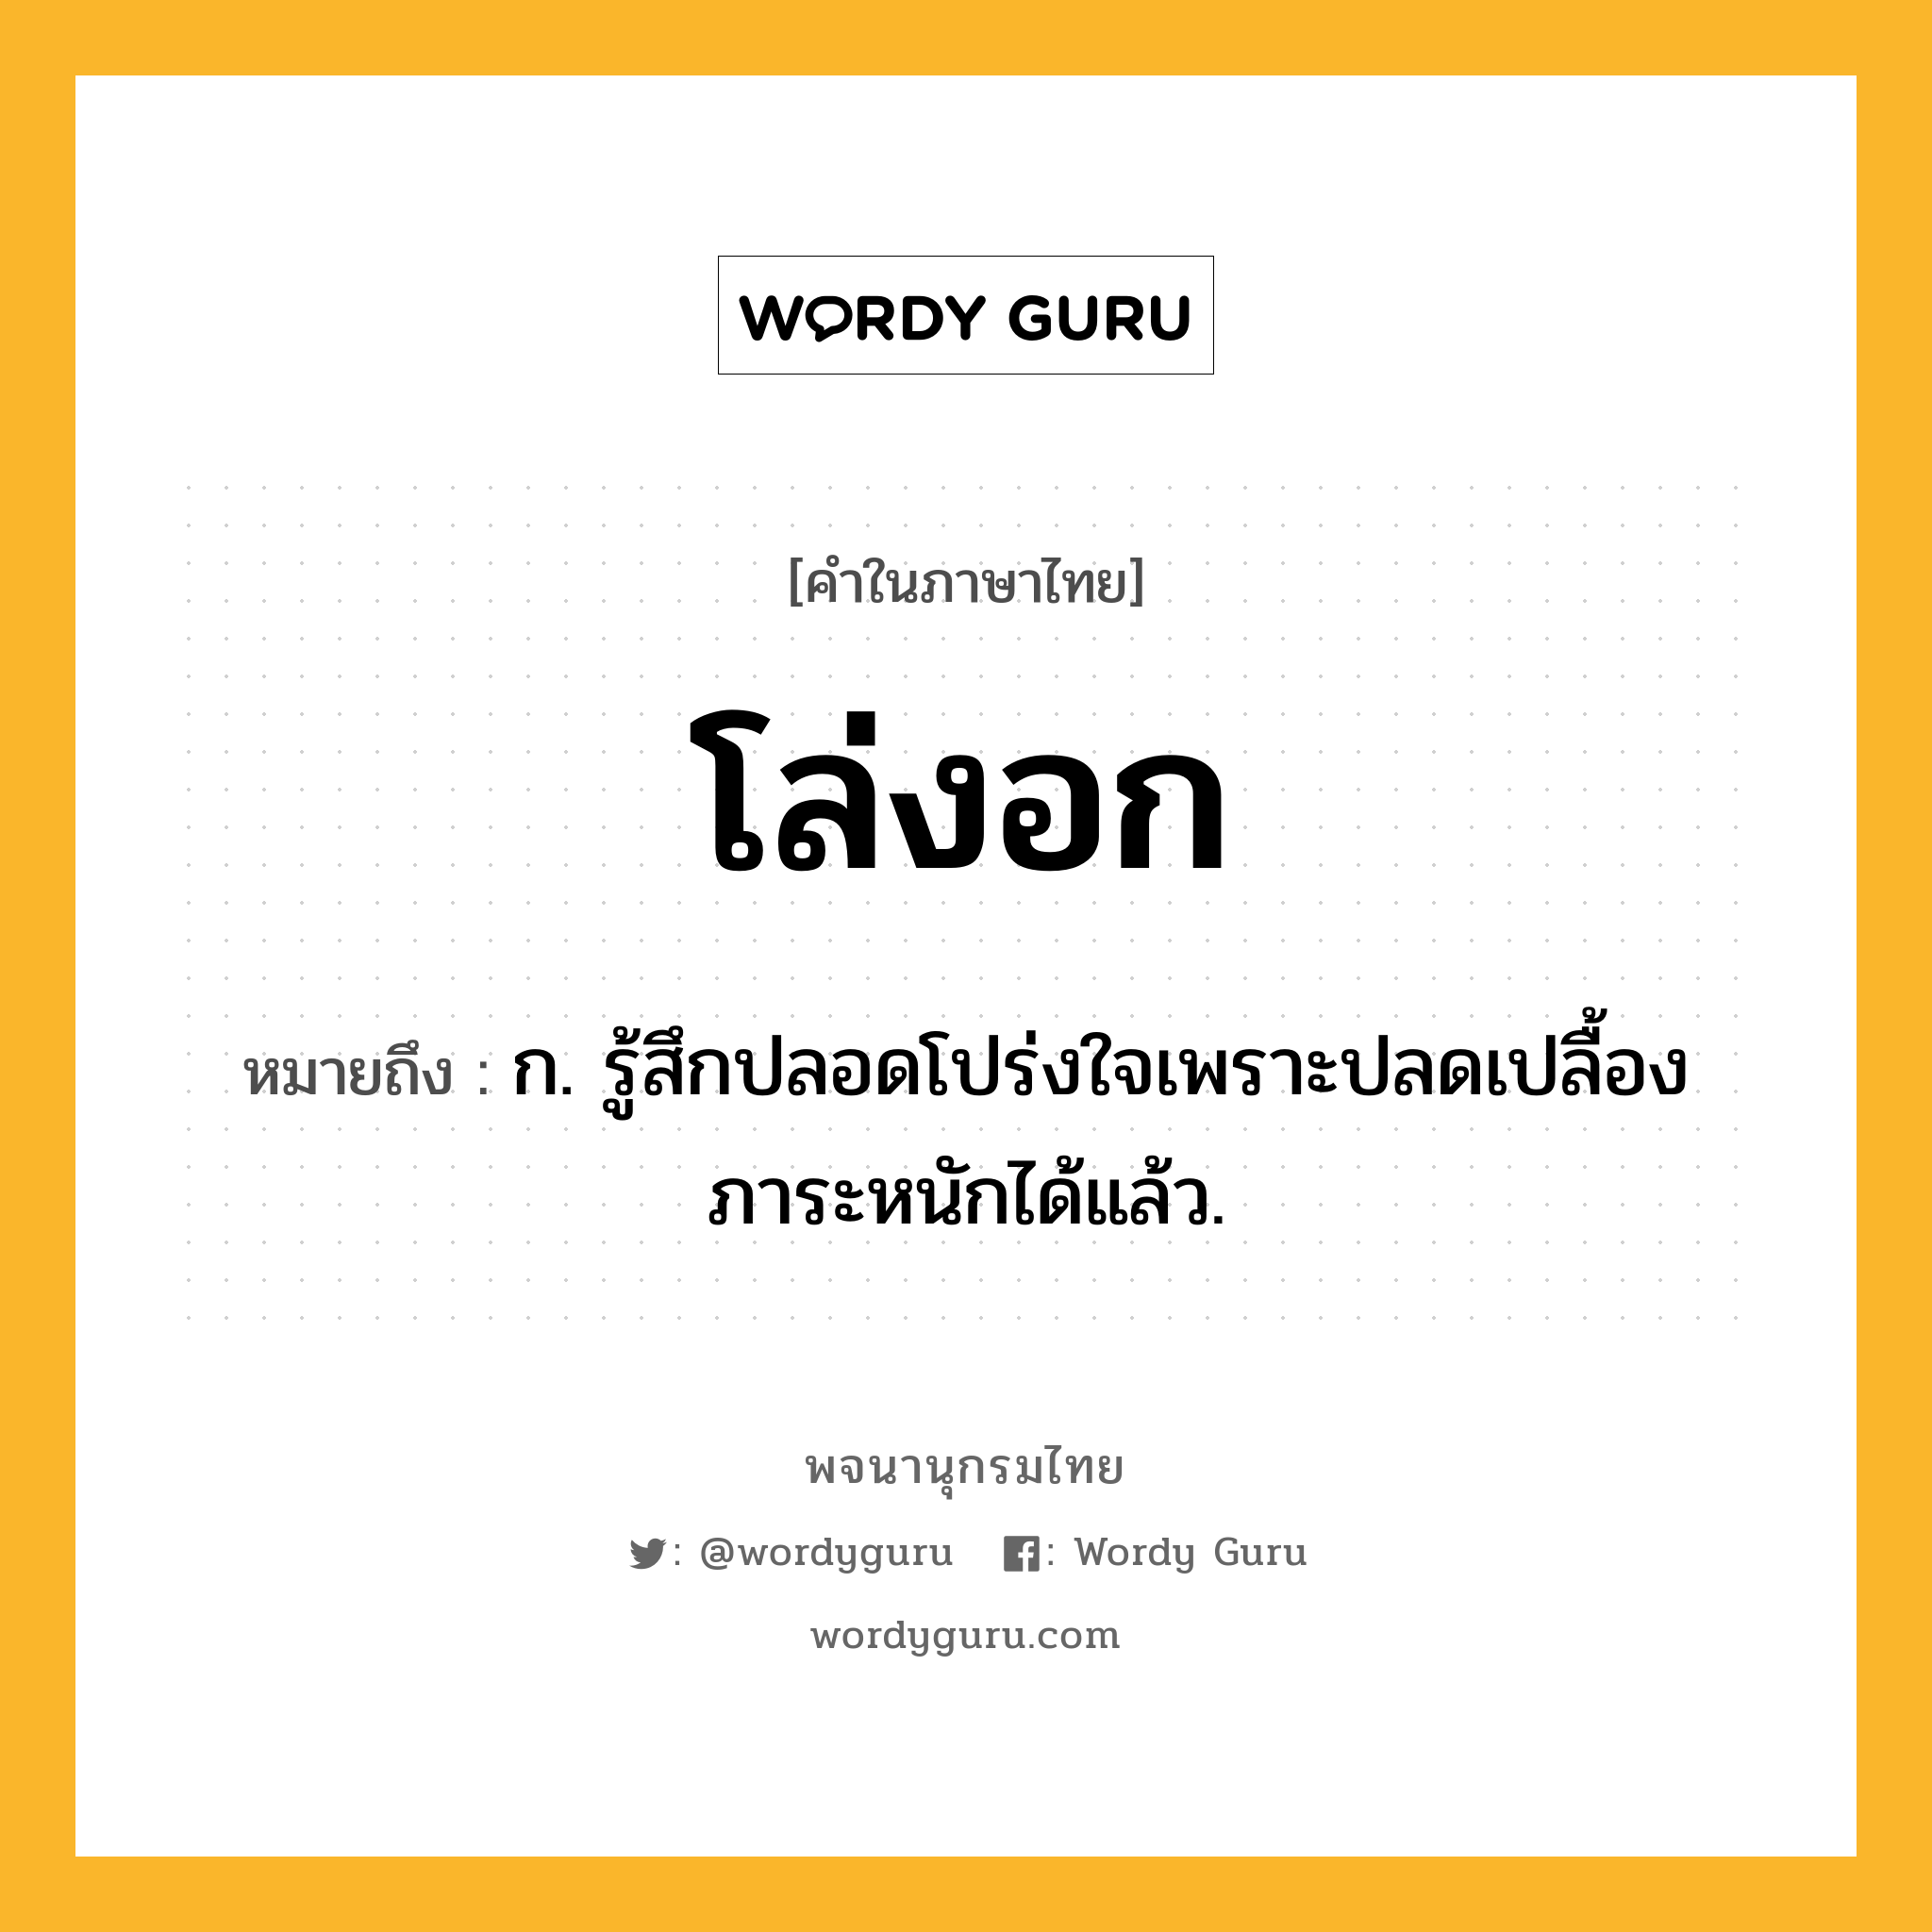 โล่งอก หมายถึงอะไร?, คำในภาษาไทย โล่งอก หมายถึง ก. รู้สึกปลอดโปร่งใจเพราะปลดเปลื้องภาระหนักได้แล้ว.